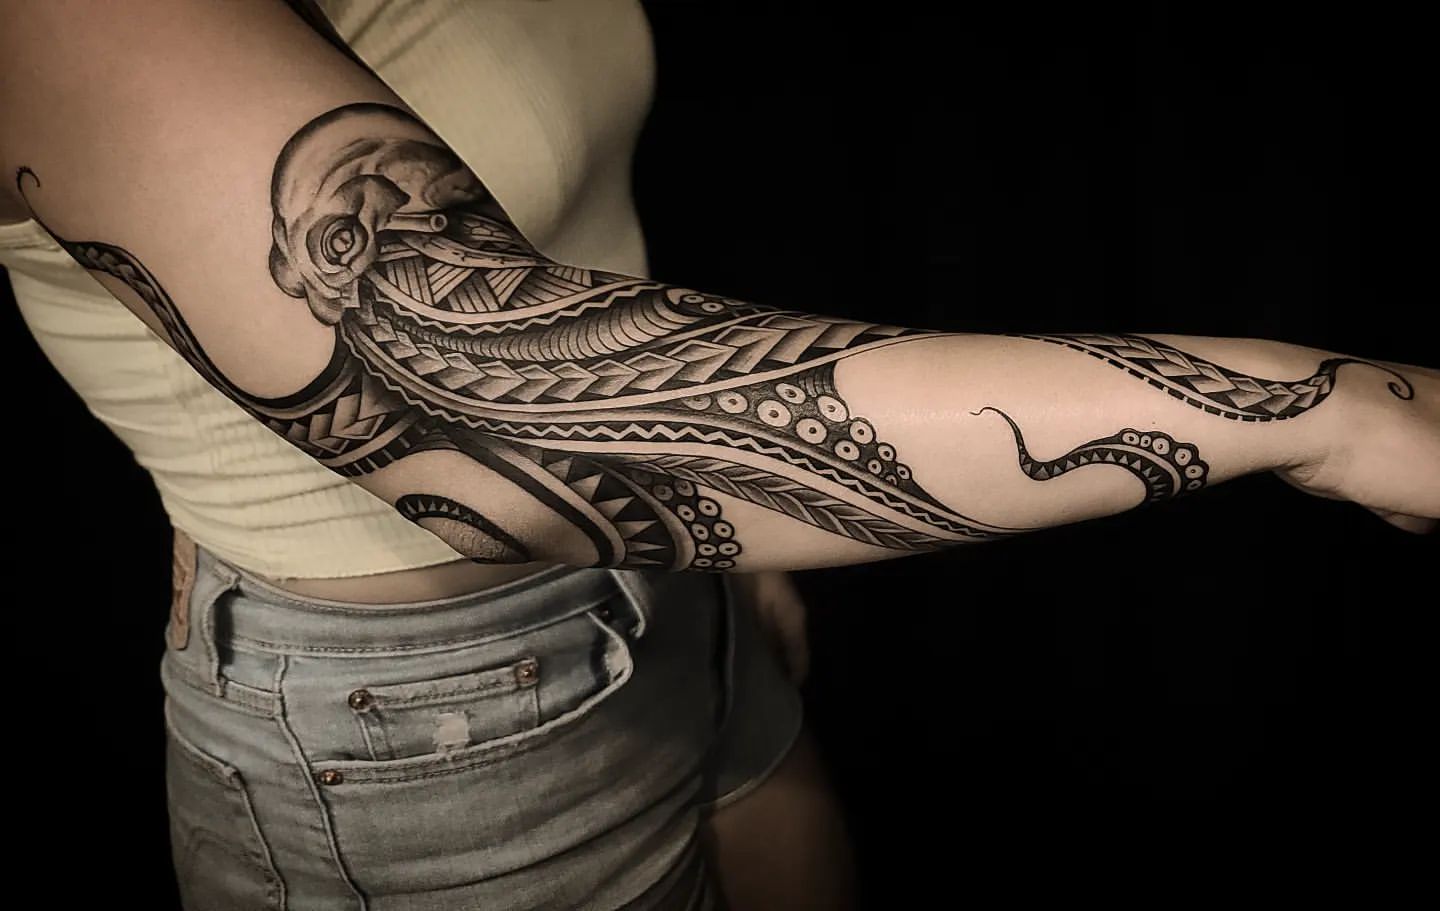 Octopus Tattoo Ideas 17